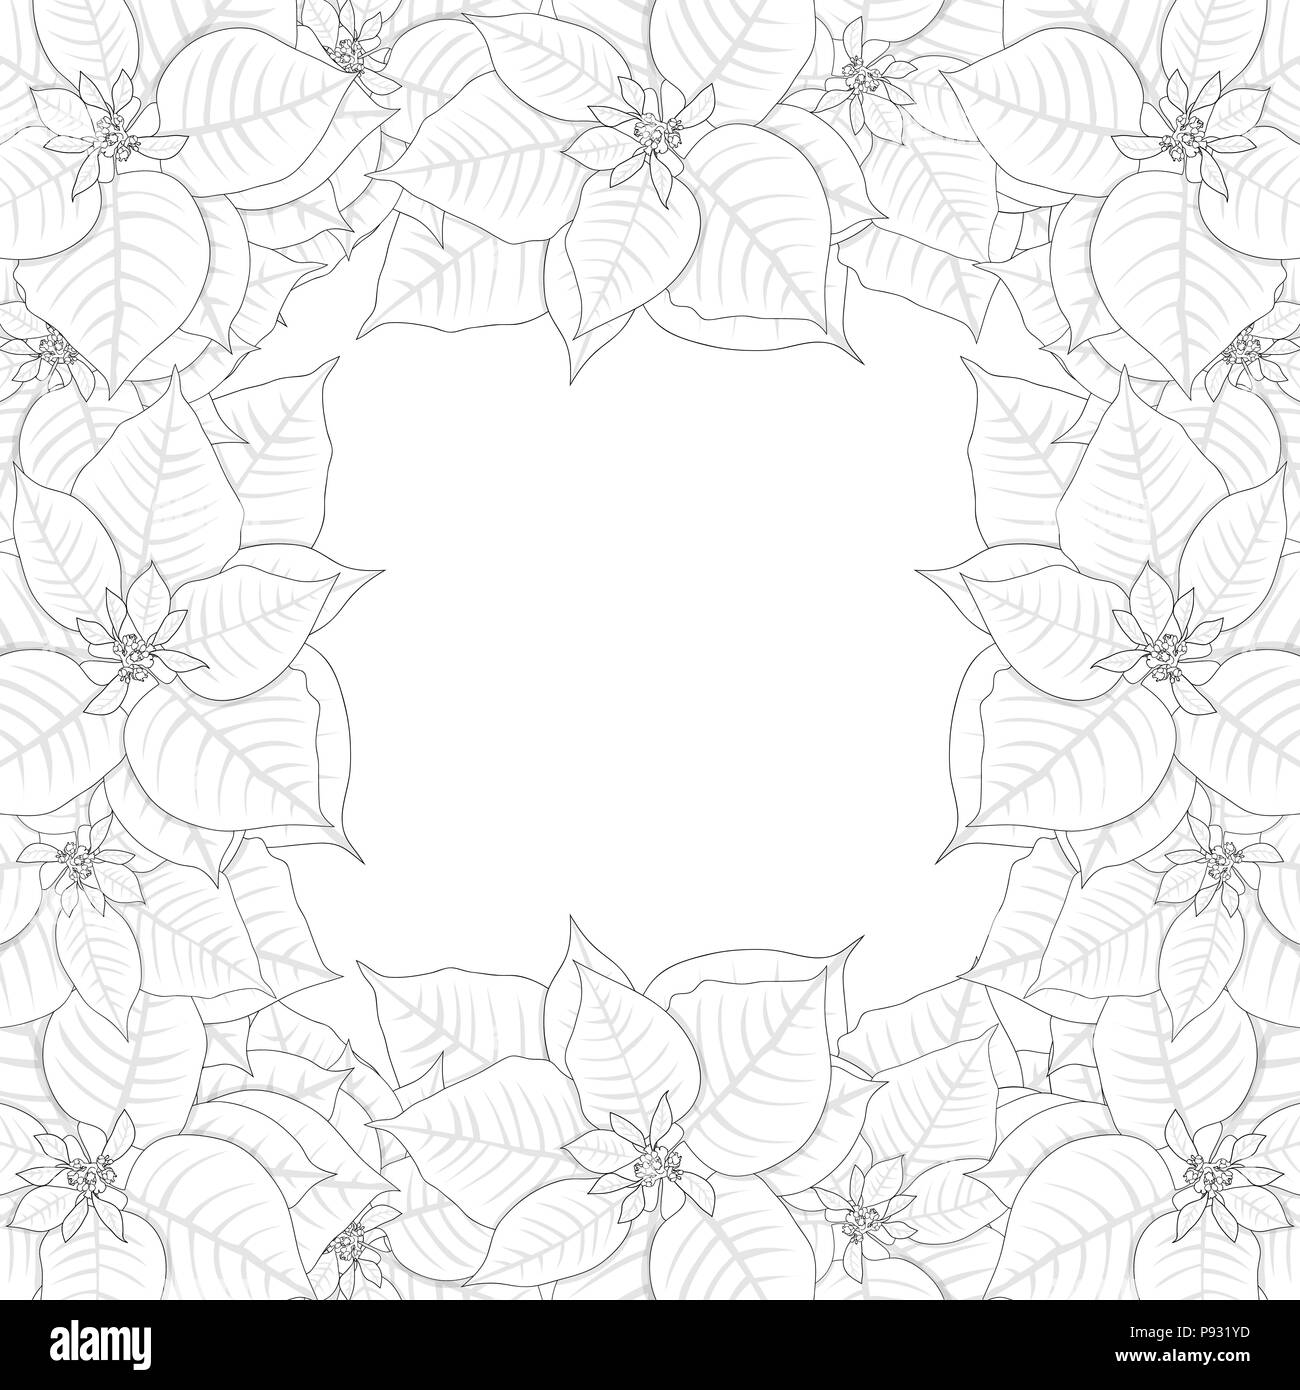 Poinsettia bordo presente isolato su sfondo bianco. Illustrazione Vettoriale. Illustrazione Vettoriale